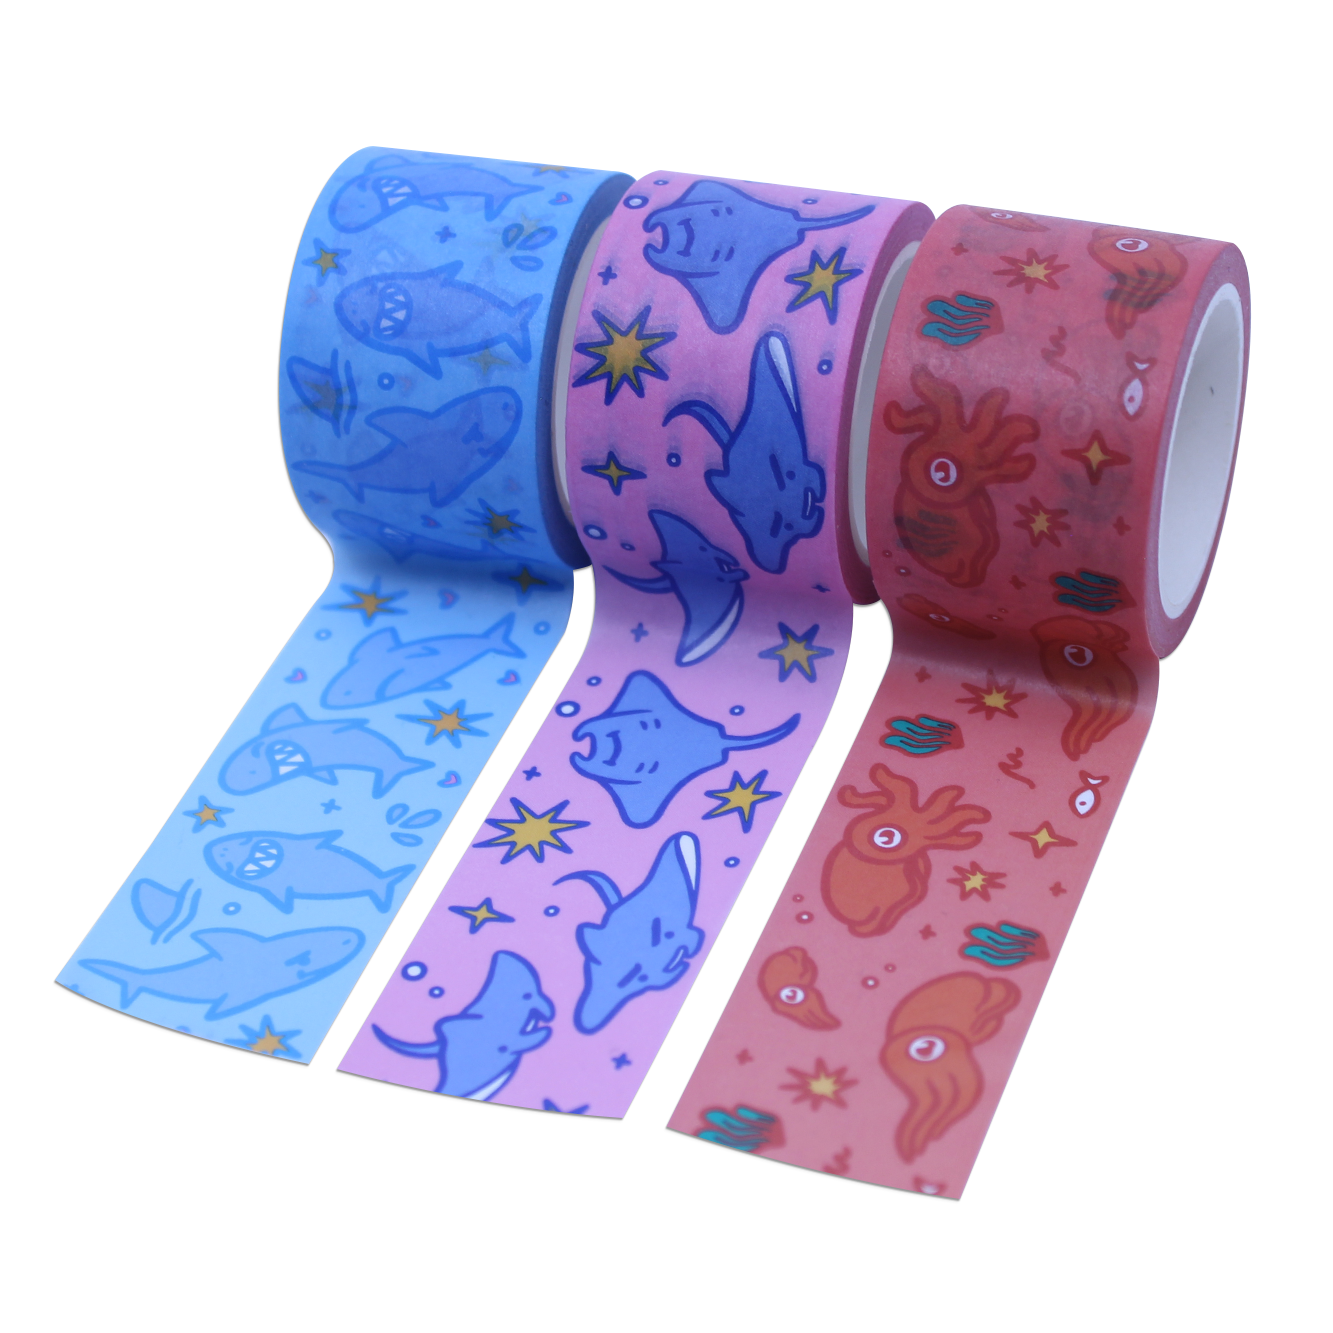 Manta Ray Pink Washi Tape